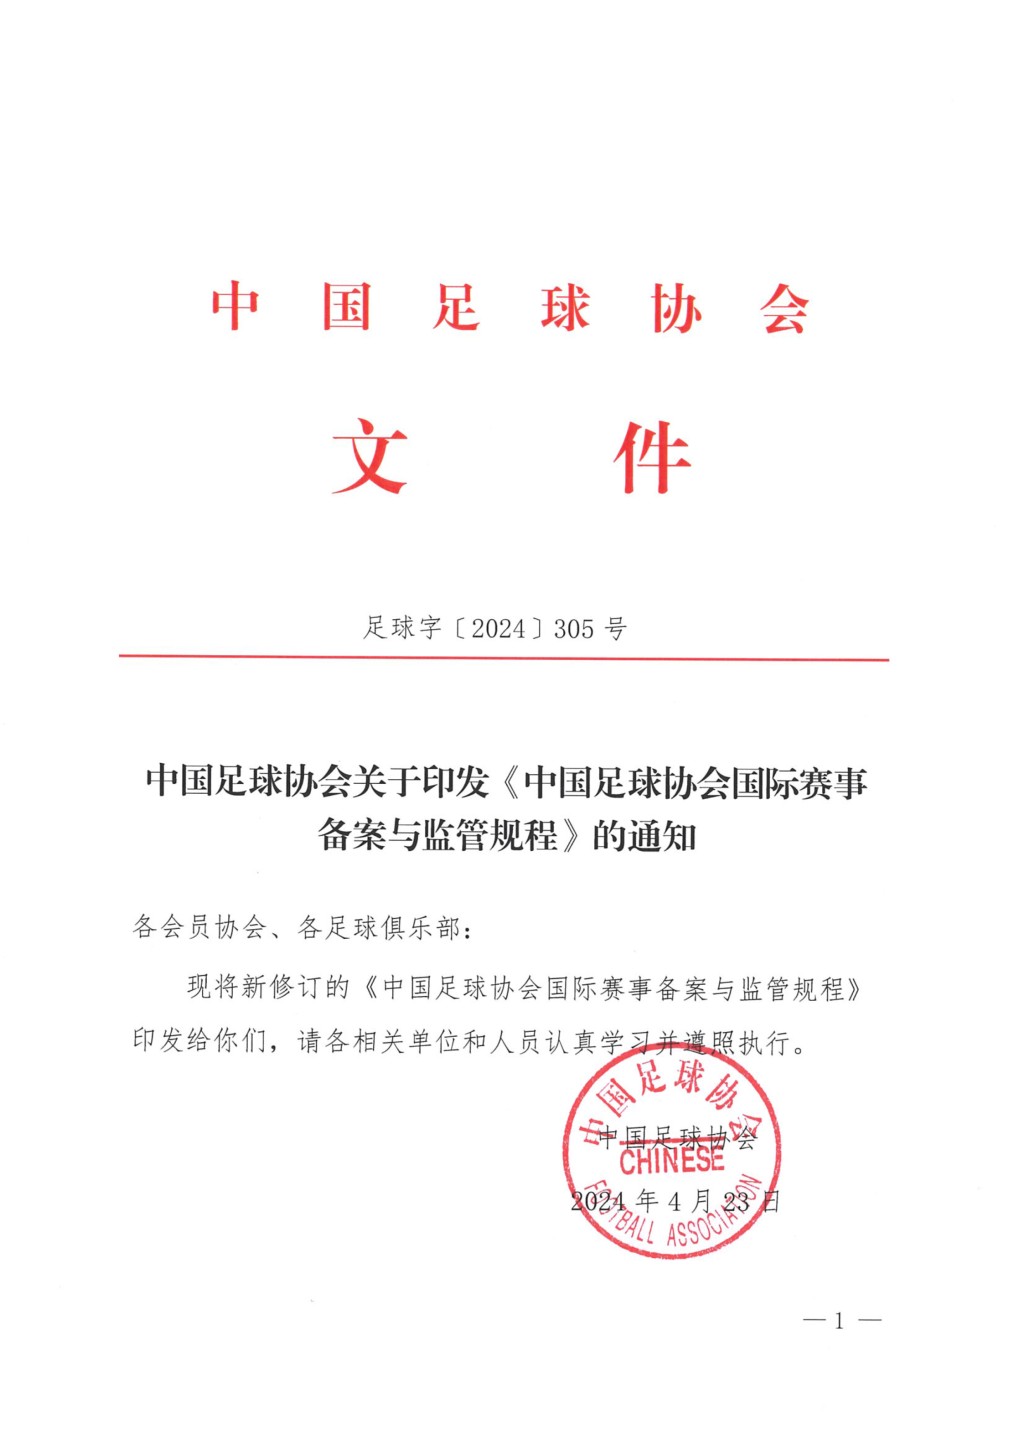 中国足协23日发布「中国足球协会国际赛事备案与监管规程」，网民称为「美斯条款」。